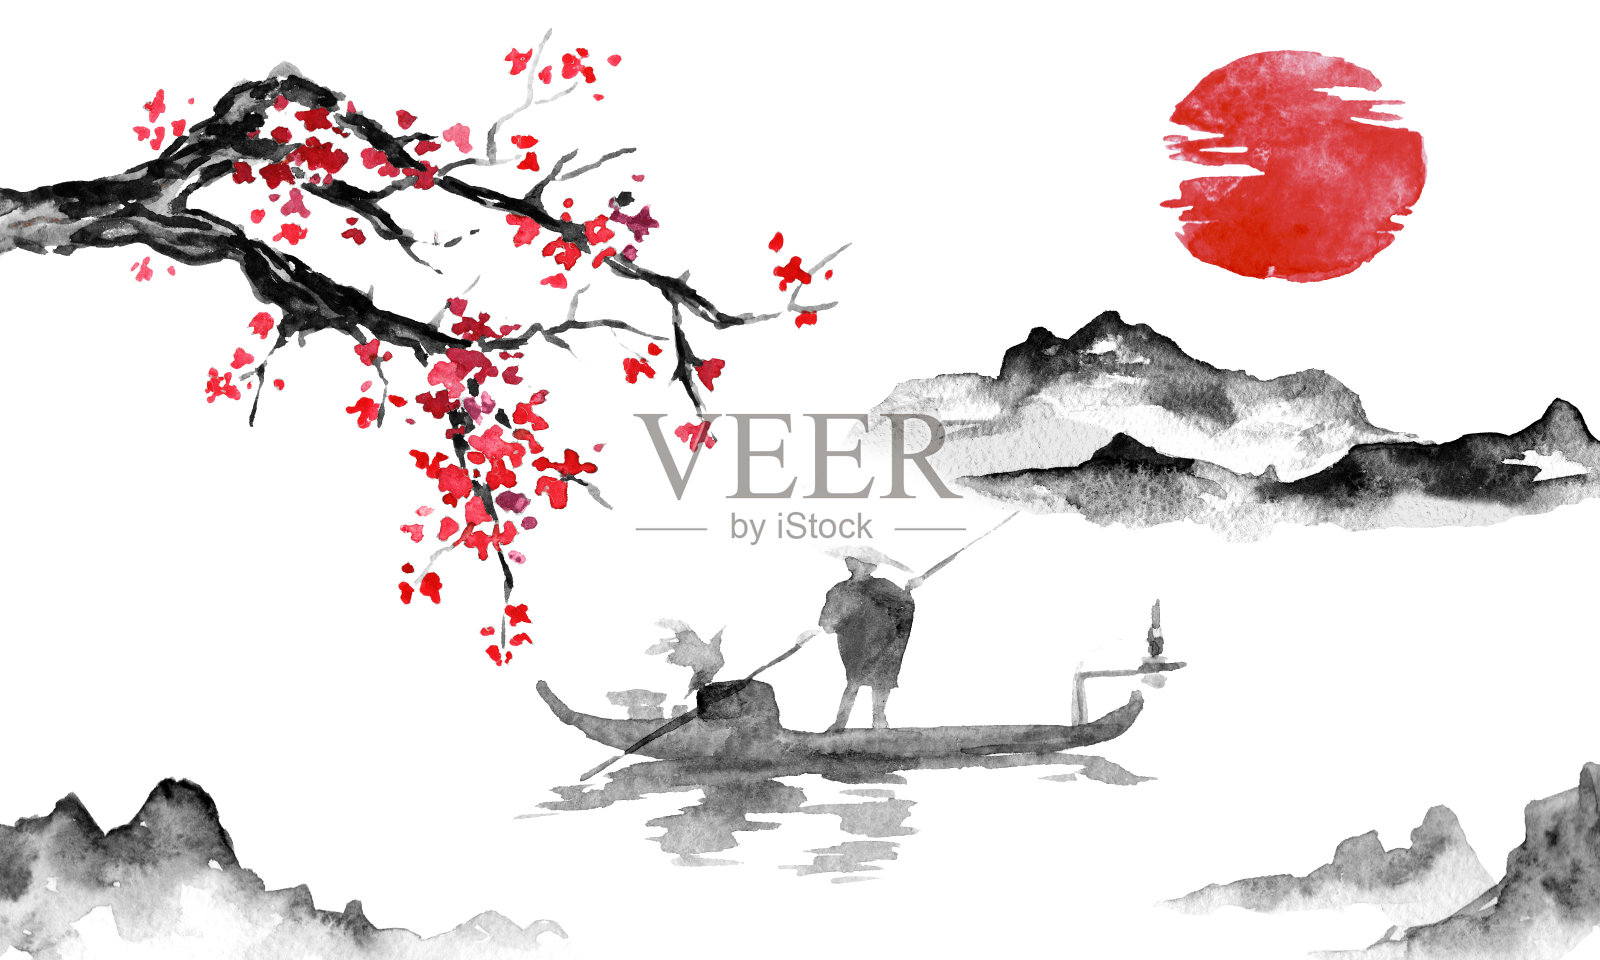 日本传统sumi-e画。墨汁插图。男人和船。山景与樱花。夕阳,黄昏。日本的照片。插画图片素材